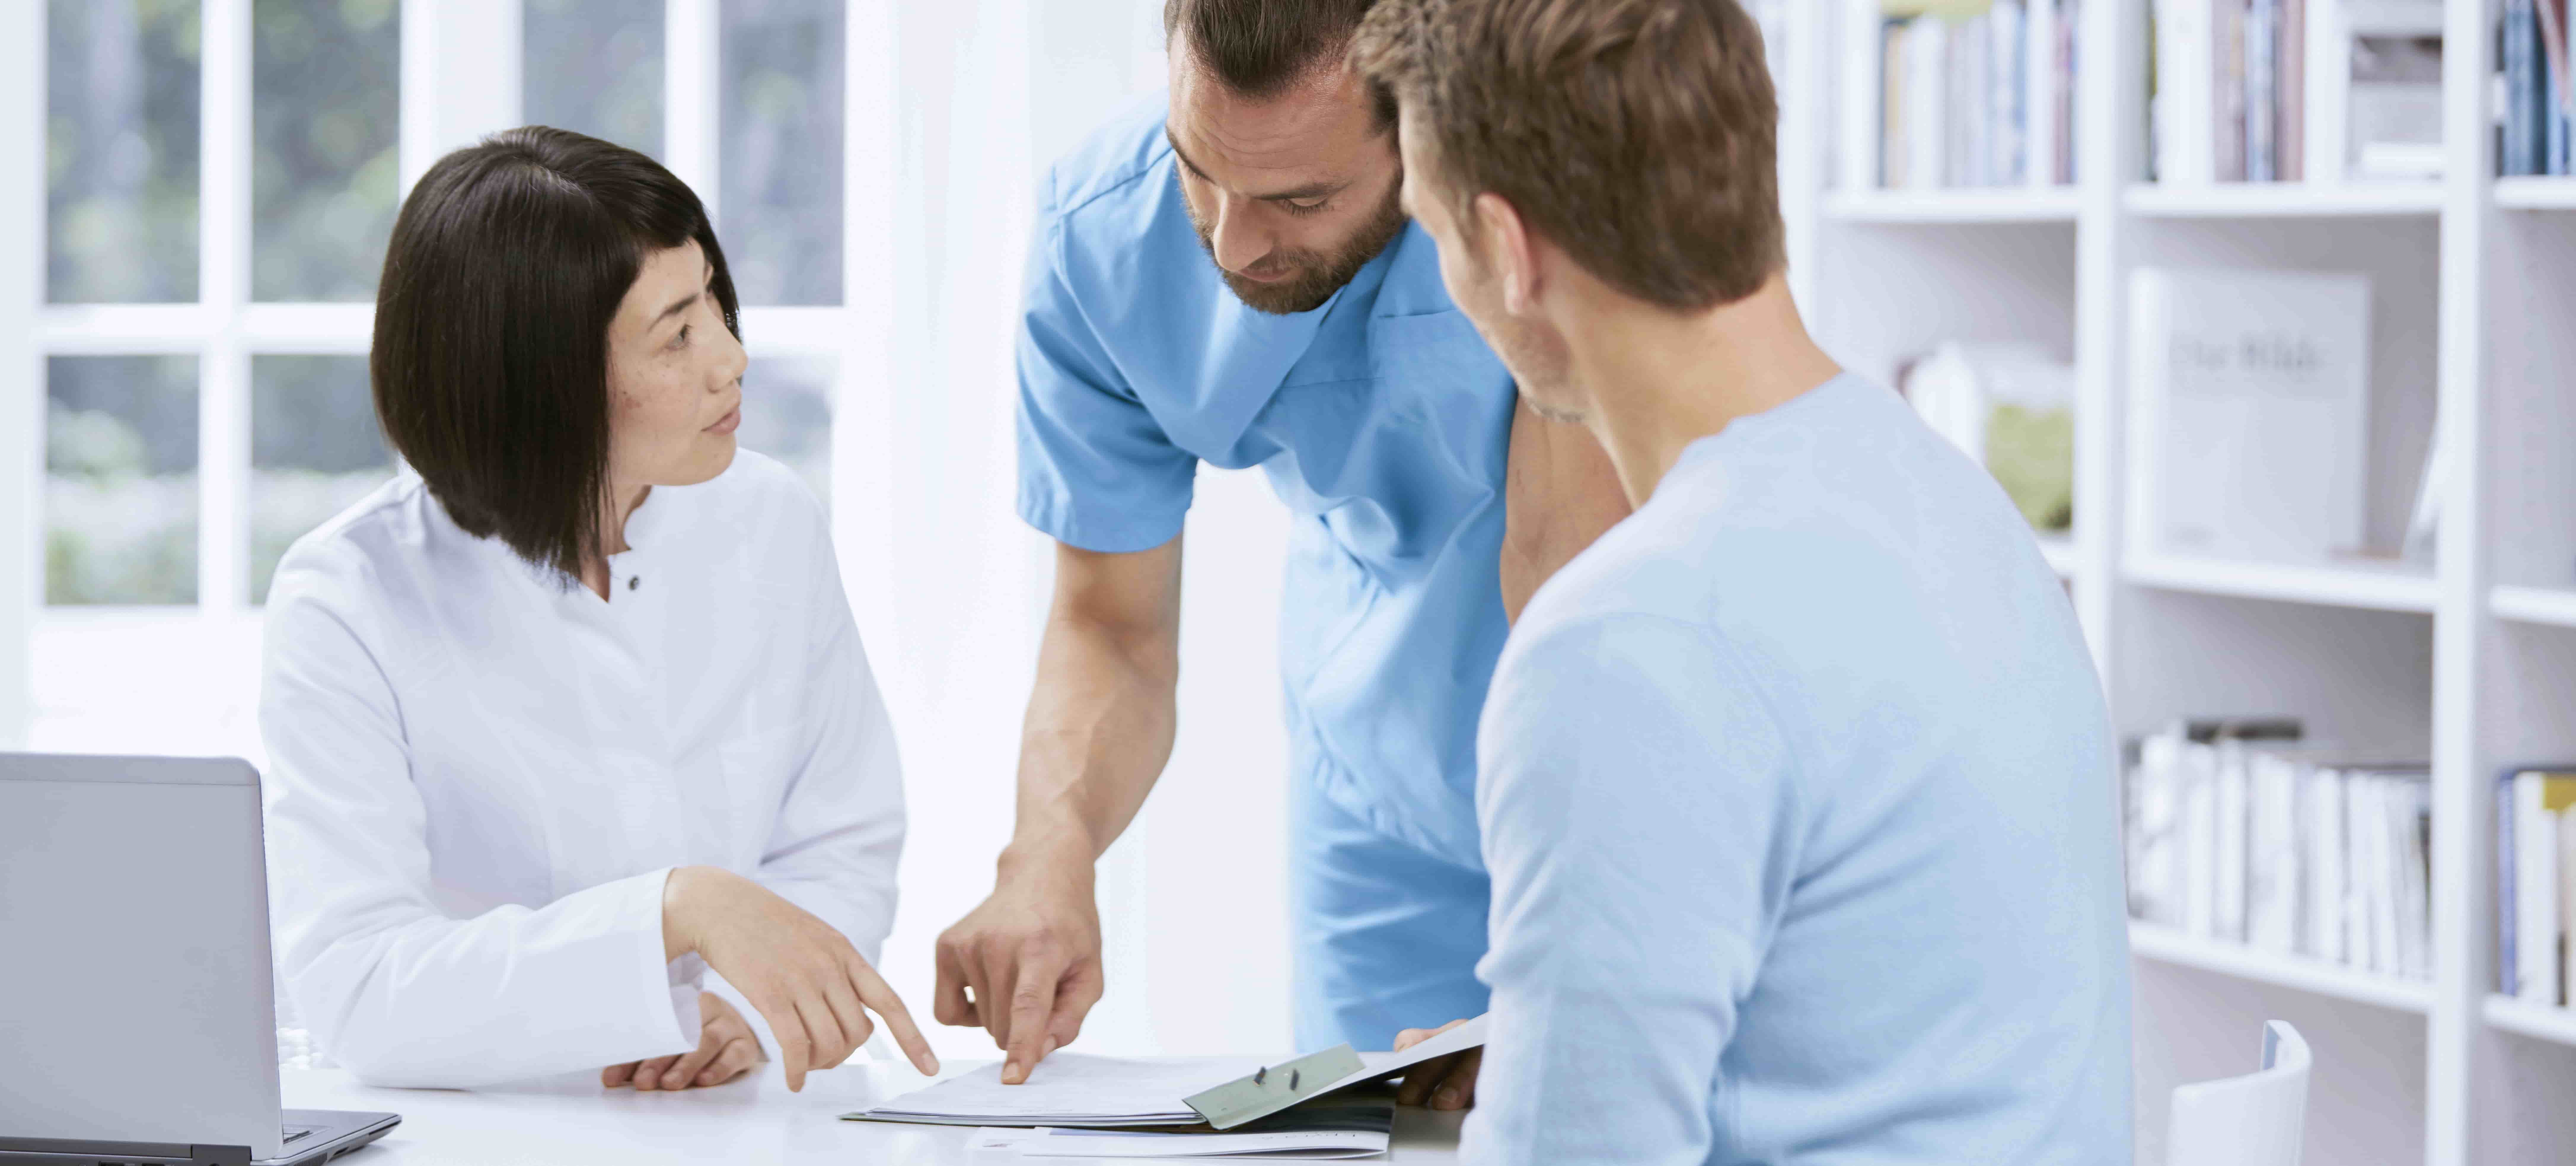 Foto de dois profissionais de saúde, um homem branco e uma mulher asiática, em ambiente hospitalar, de frente para um homem branco sentado, analisando um documento sobre a mesa